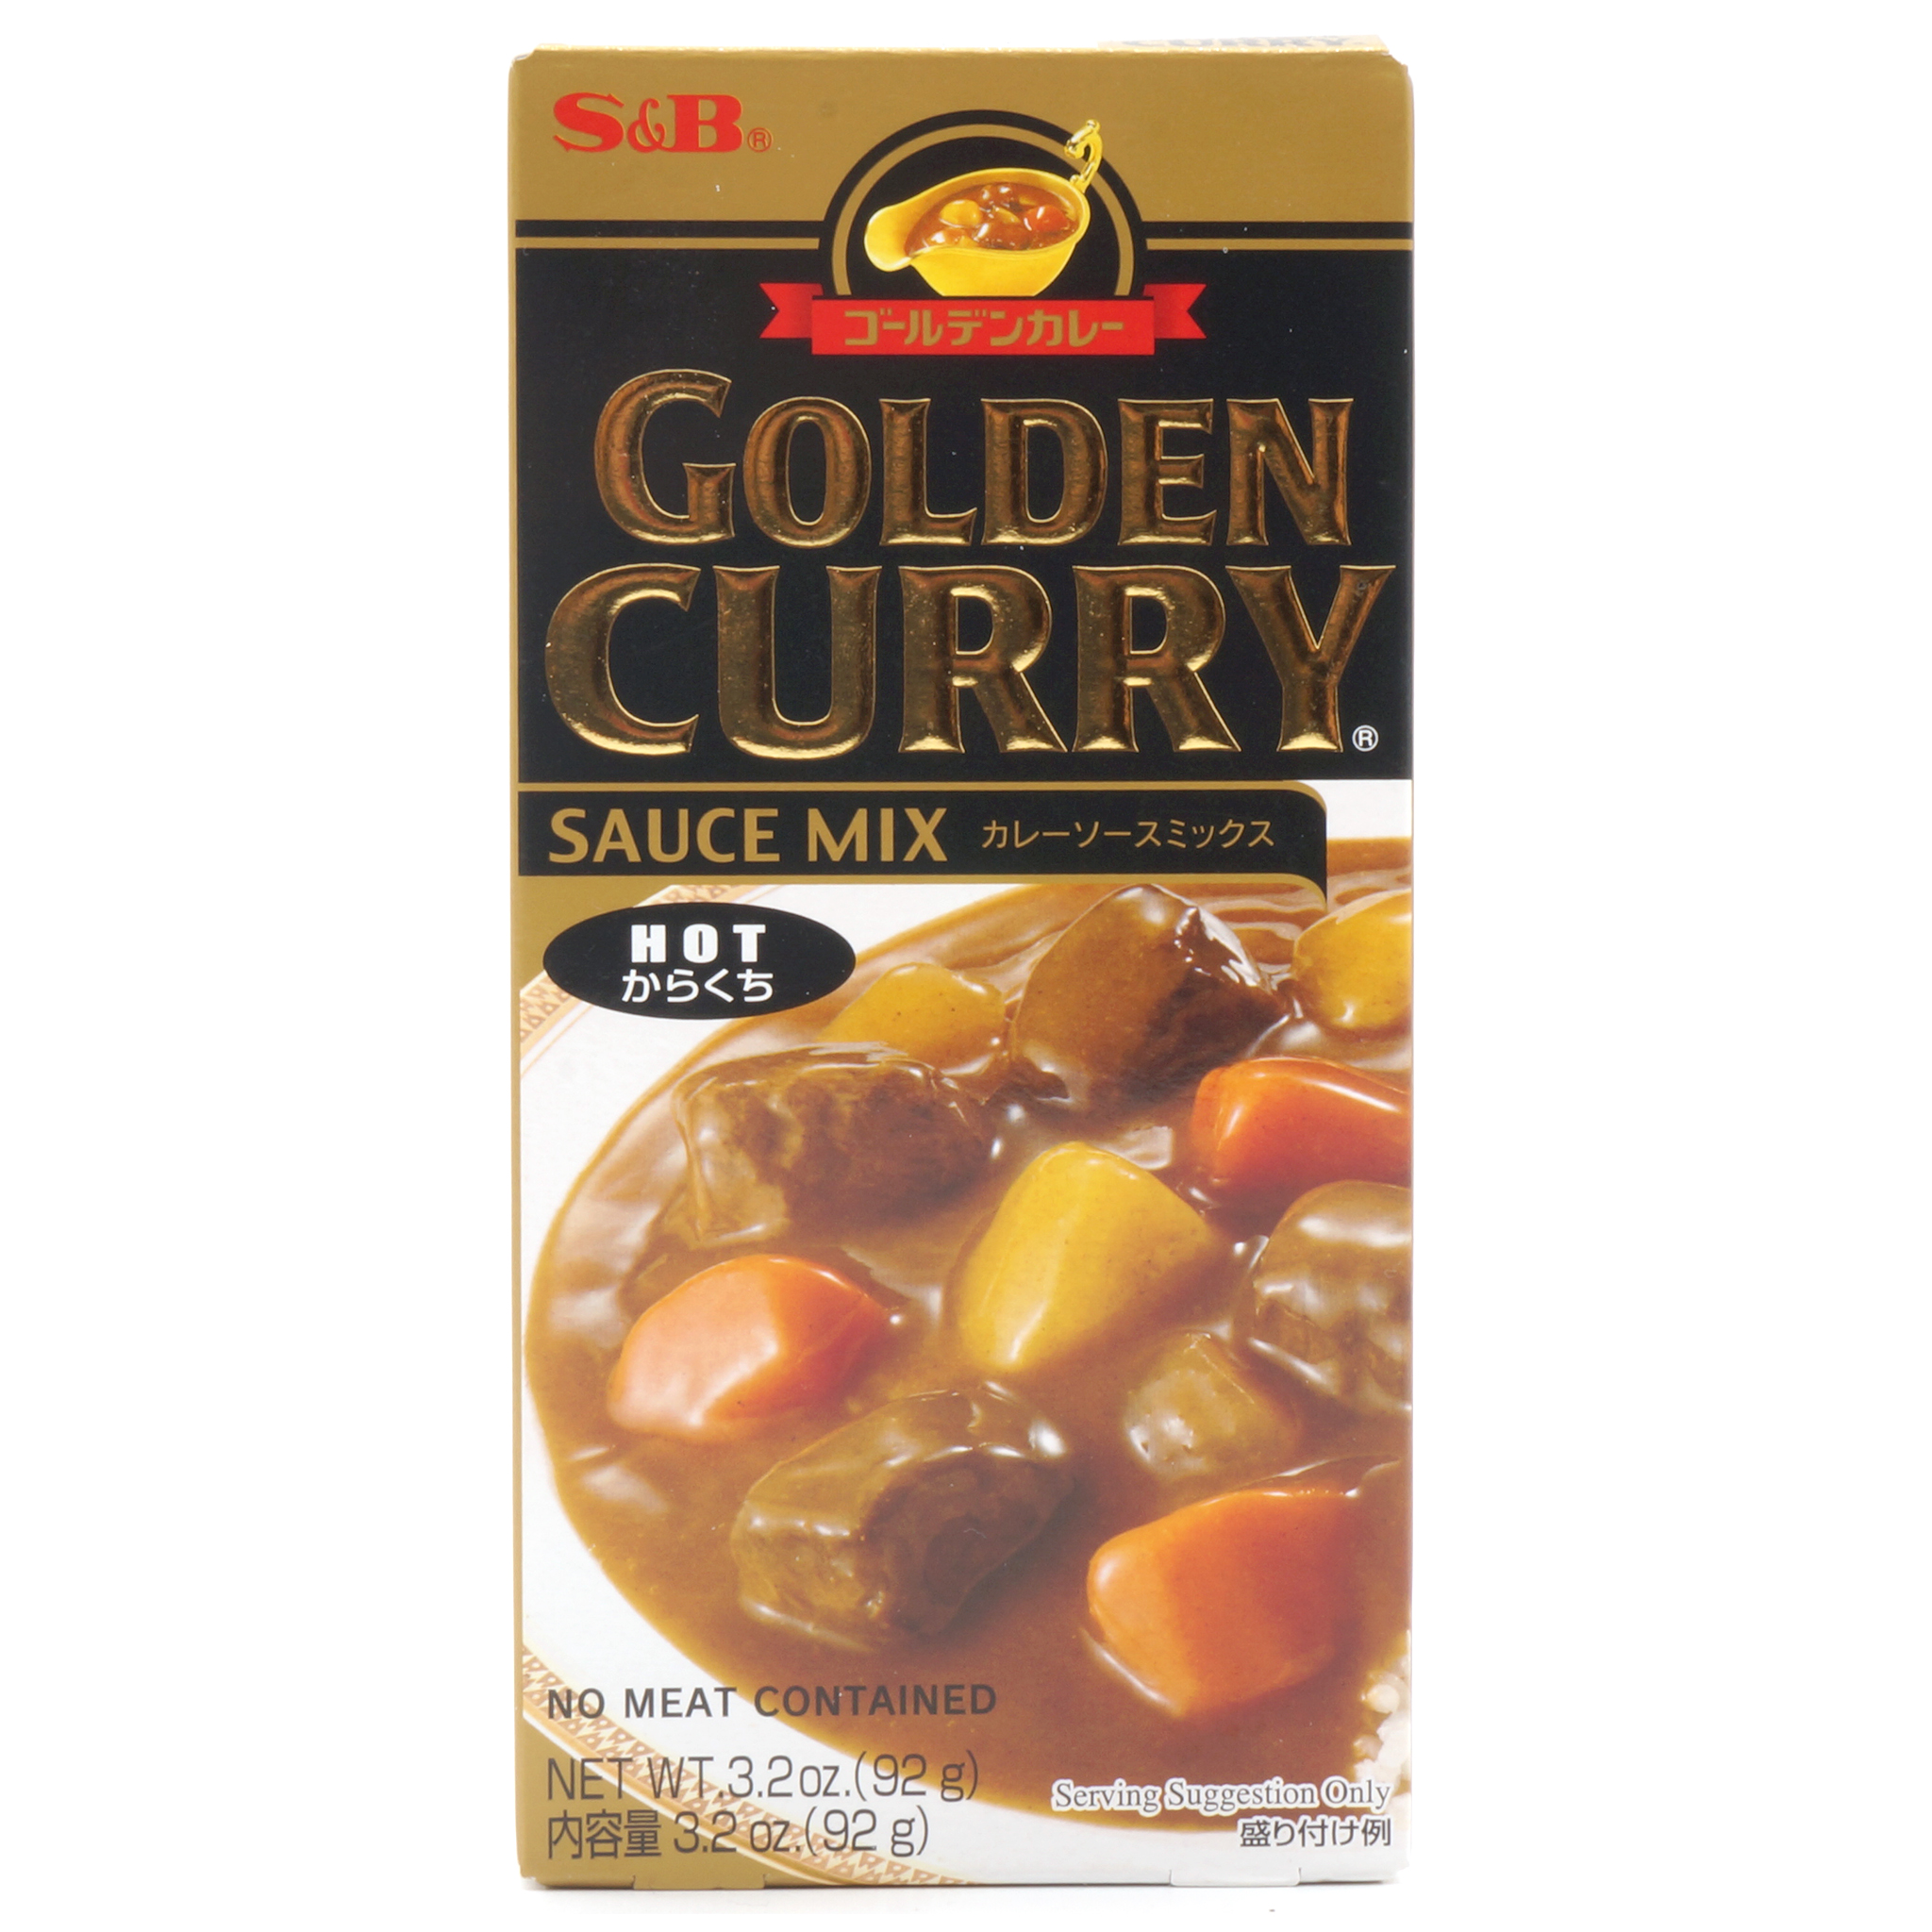 Golden Curry Hot - S&B - 92g